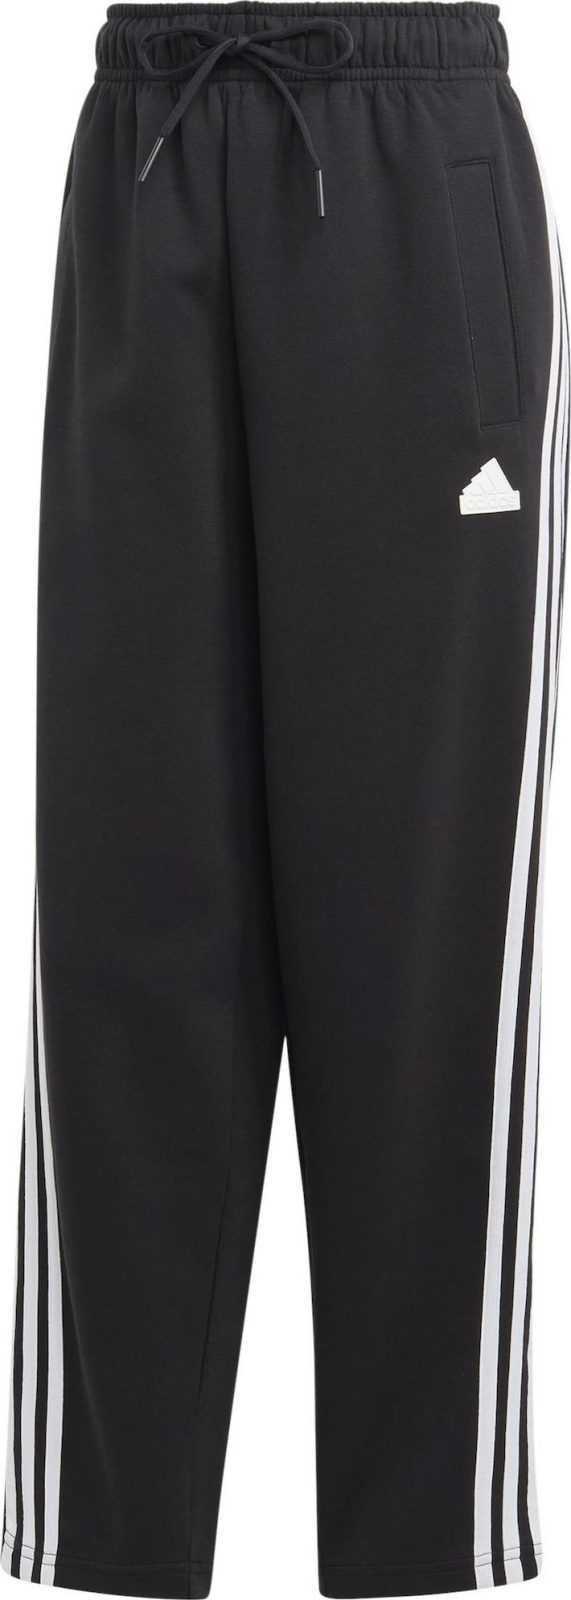 ADIDAS SPORTSWEAR Sportovní kalhoty 'Future Icons' černá / bílá